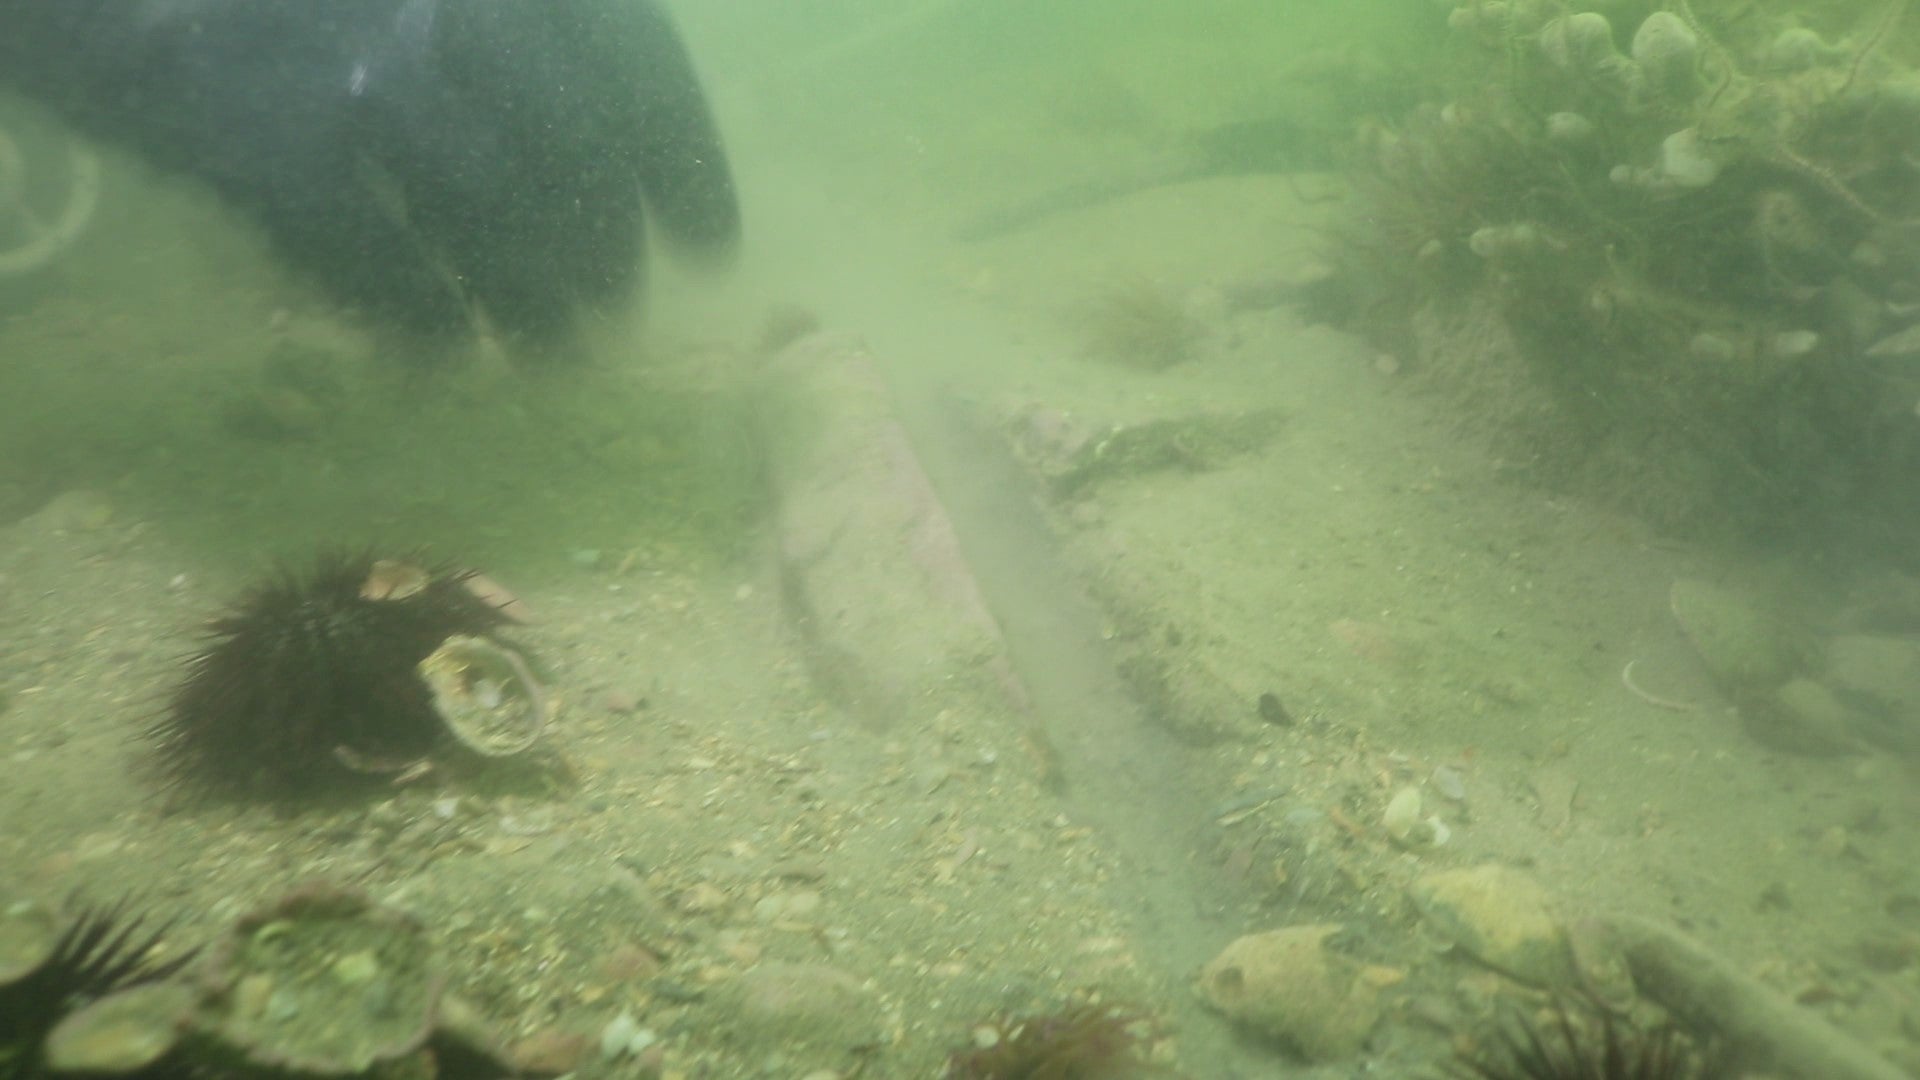 One of the stones found when the diving police unit checked out the site in 2020. (Image: Squadra Sommozzatori della Polizia di Stato di Venezia)